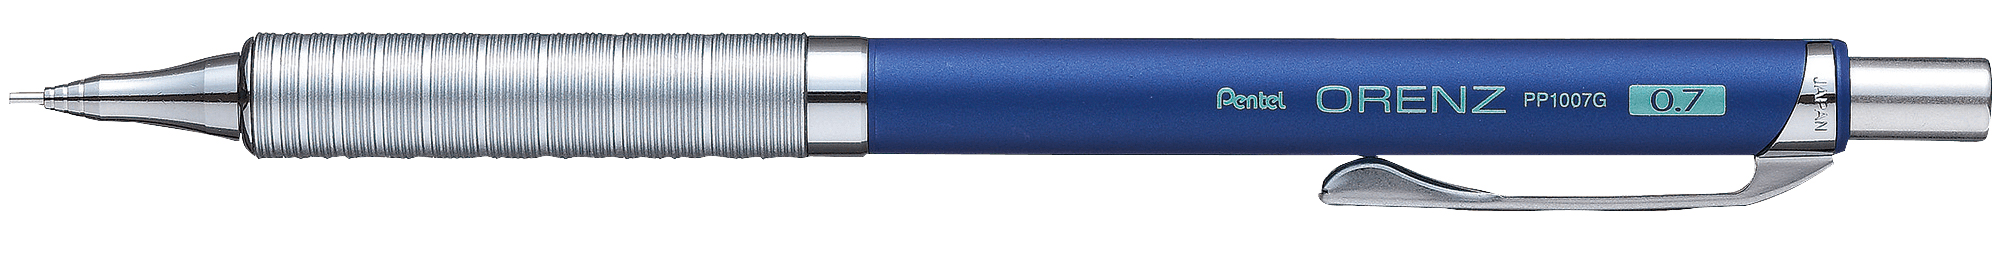 Карандаш механический Pentel Orenz Metal Grip синий корпус 0,7мм XPP1007G-CX